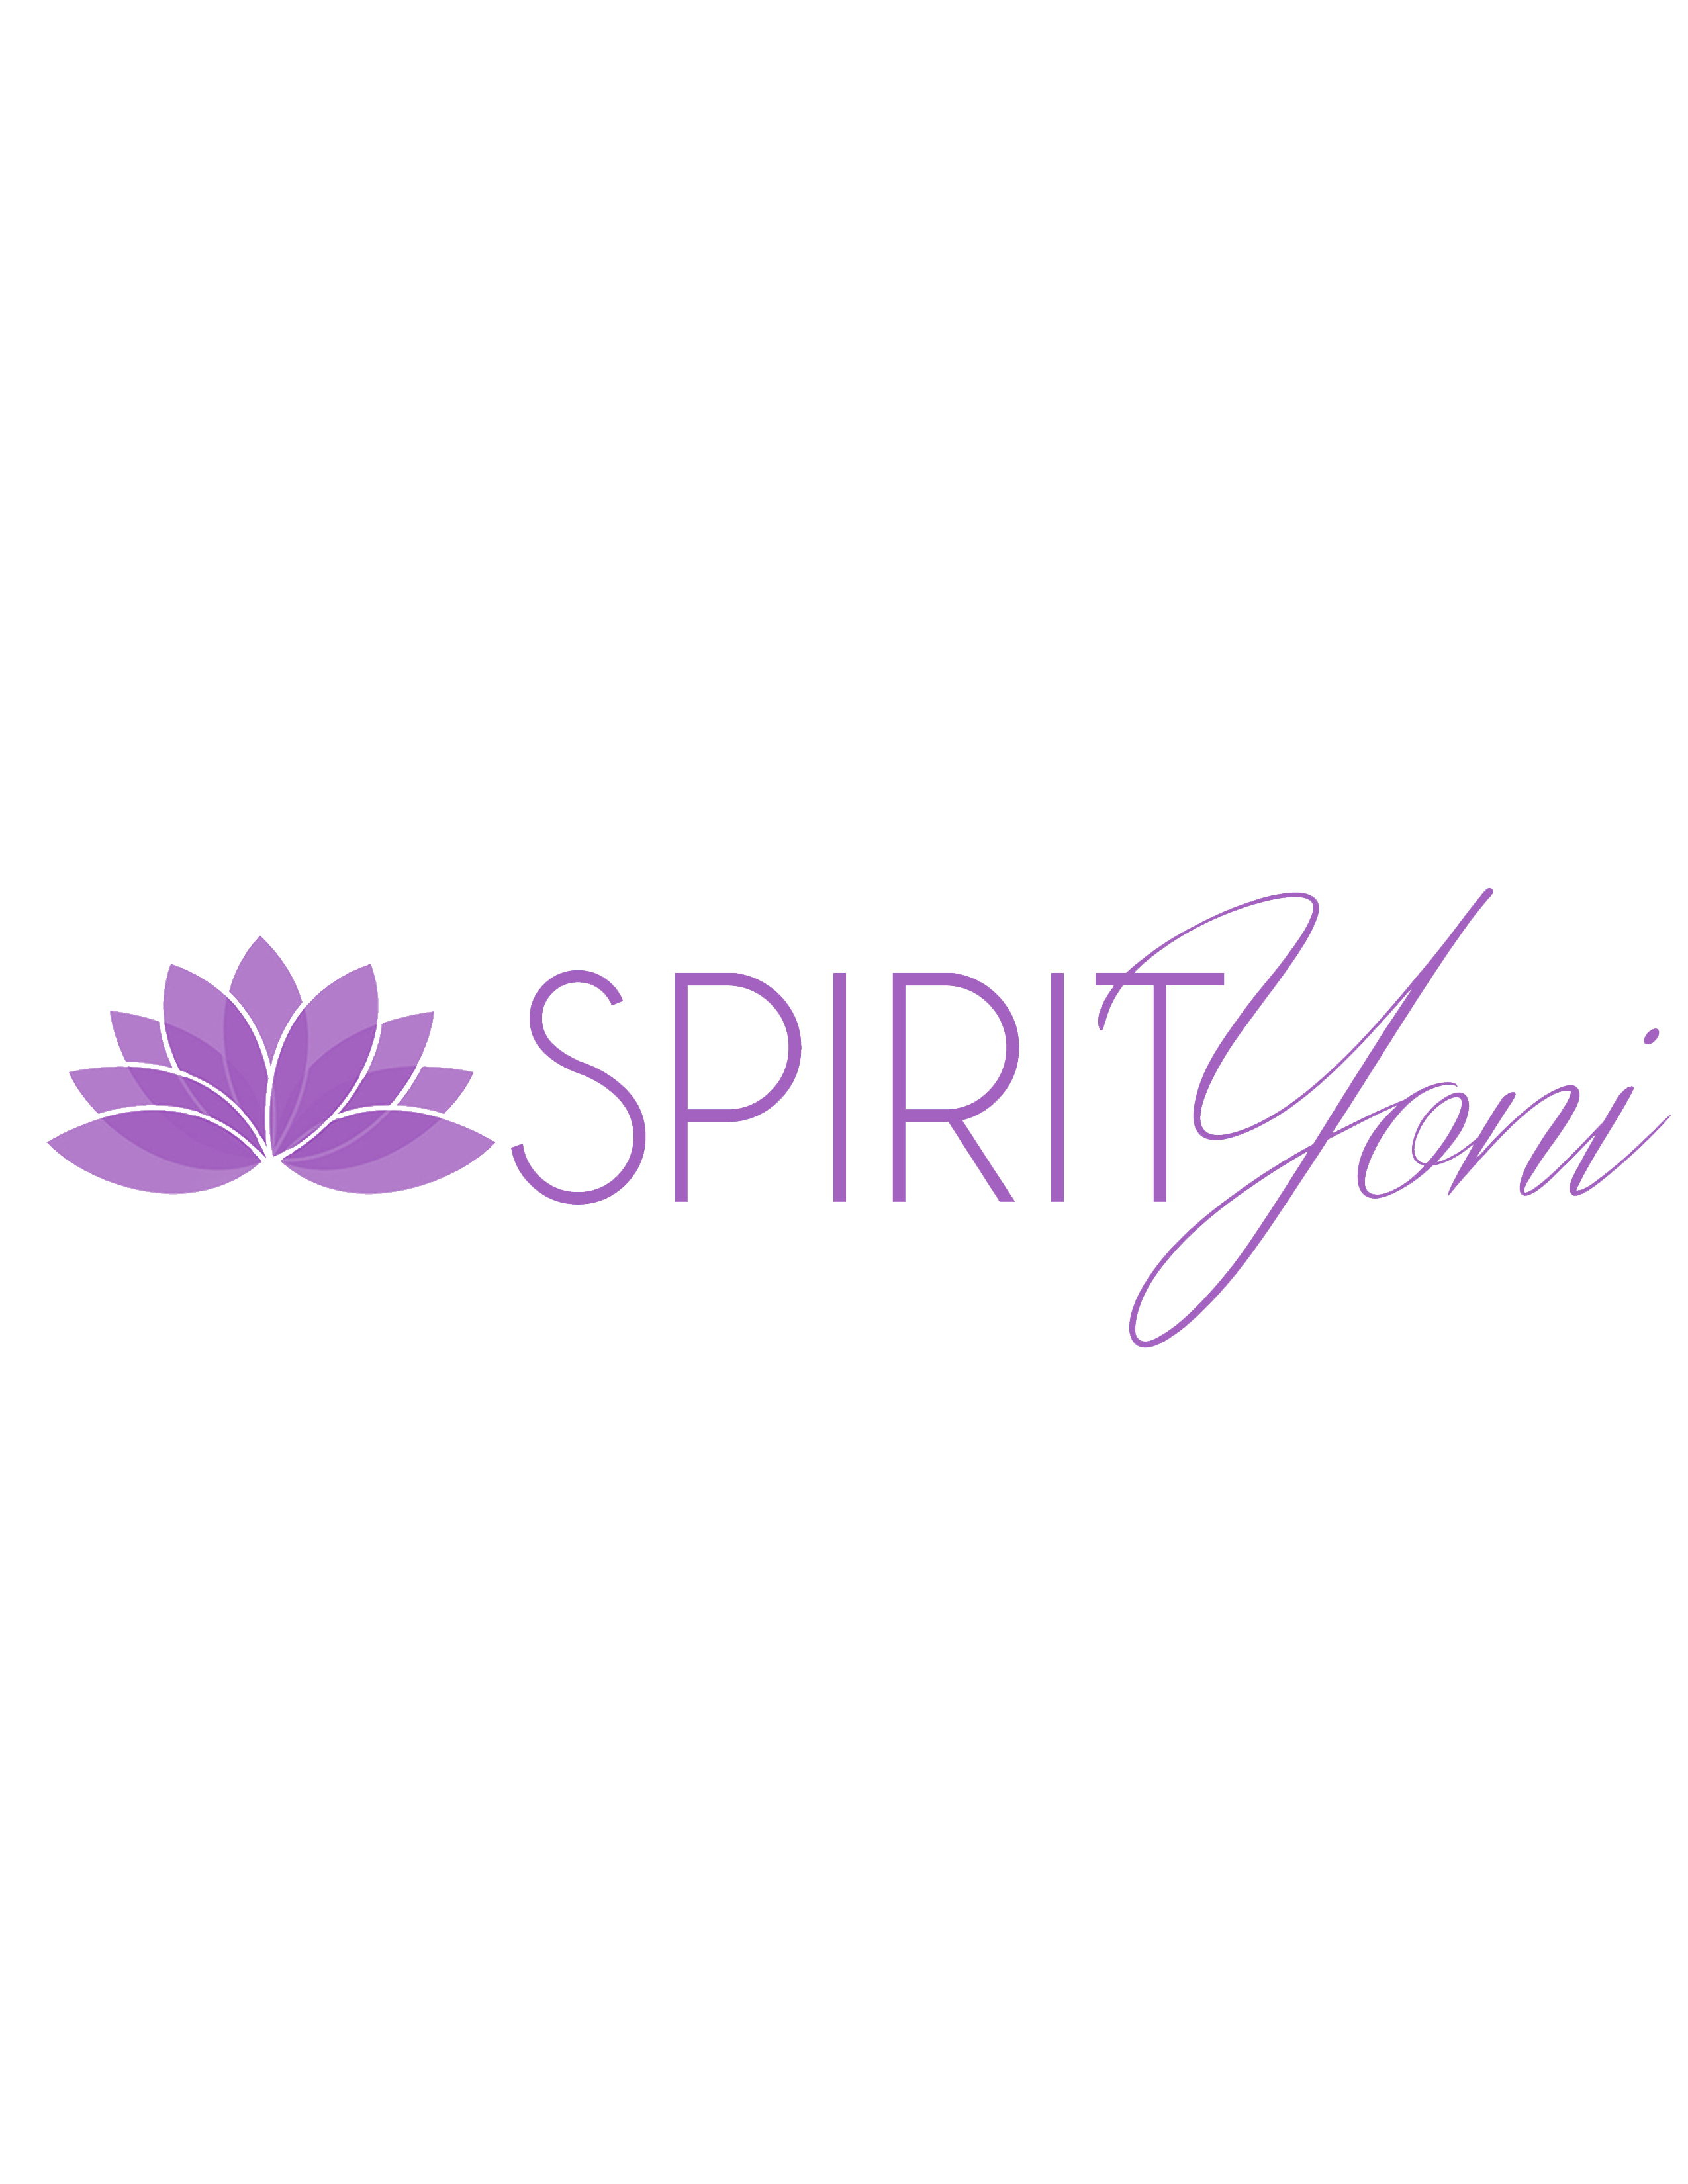 Spirit Yoni